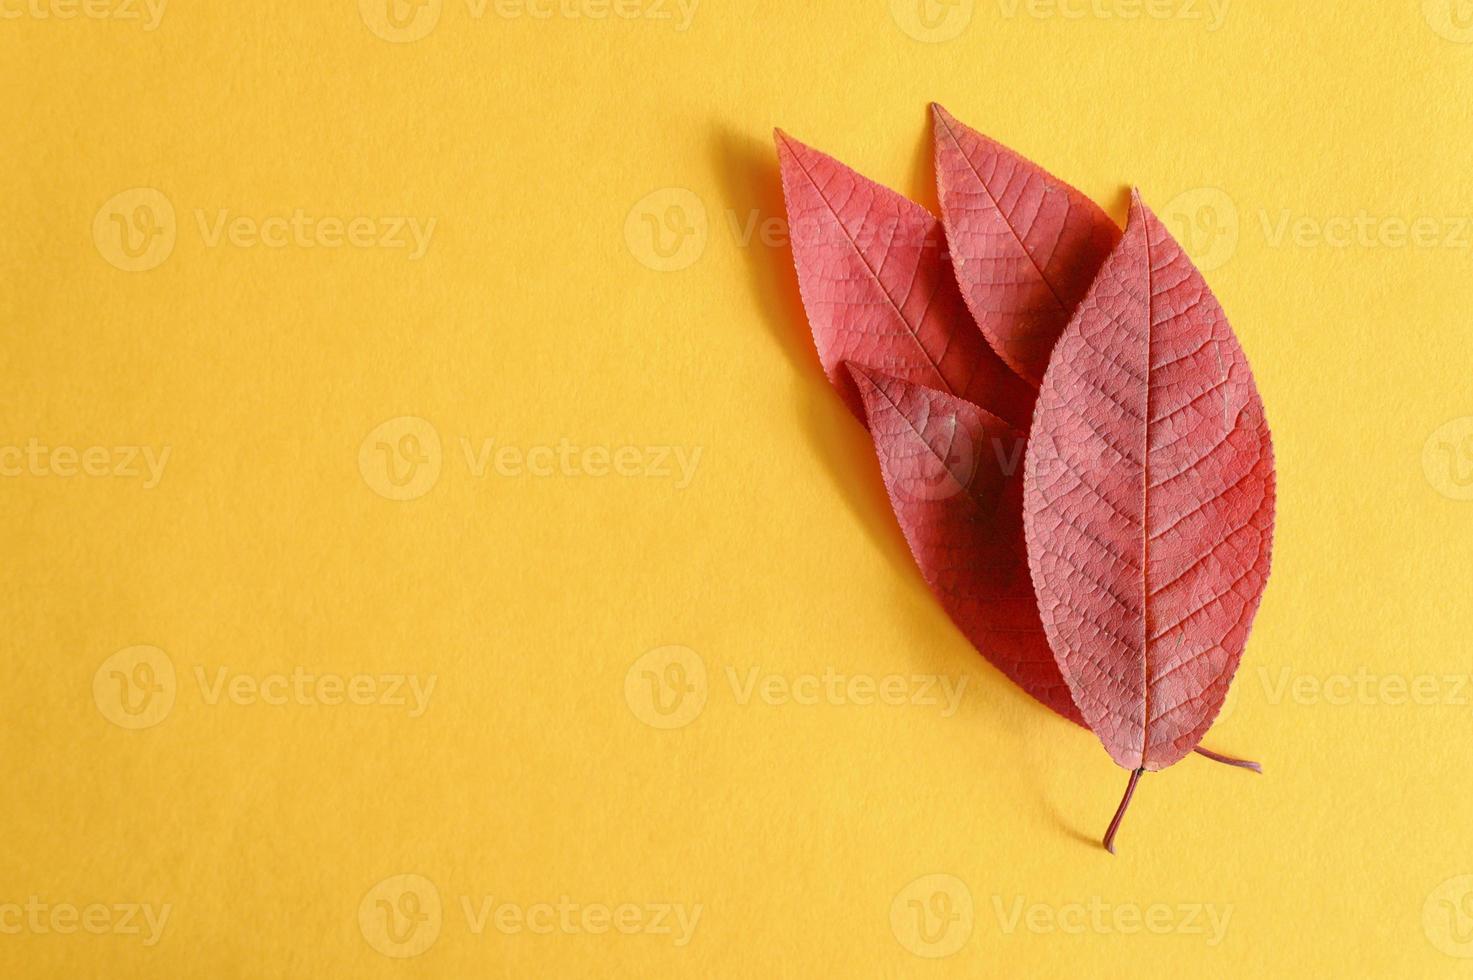 flera röda fallna höstkörsbärsblad på en gul pappersbakgrund låg foto